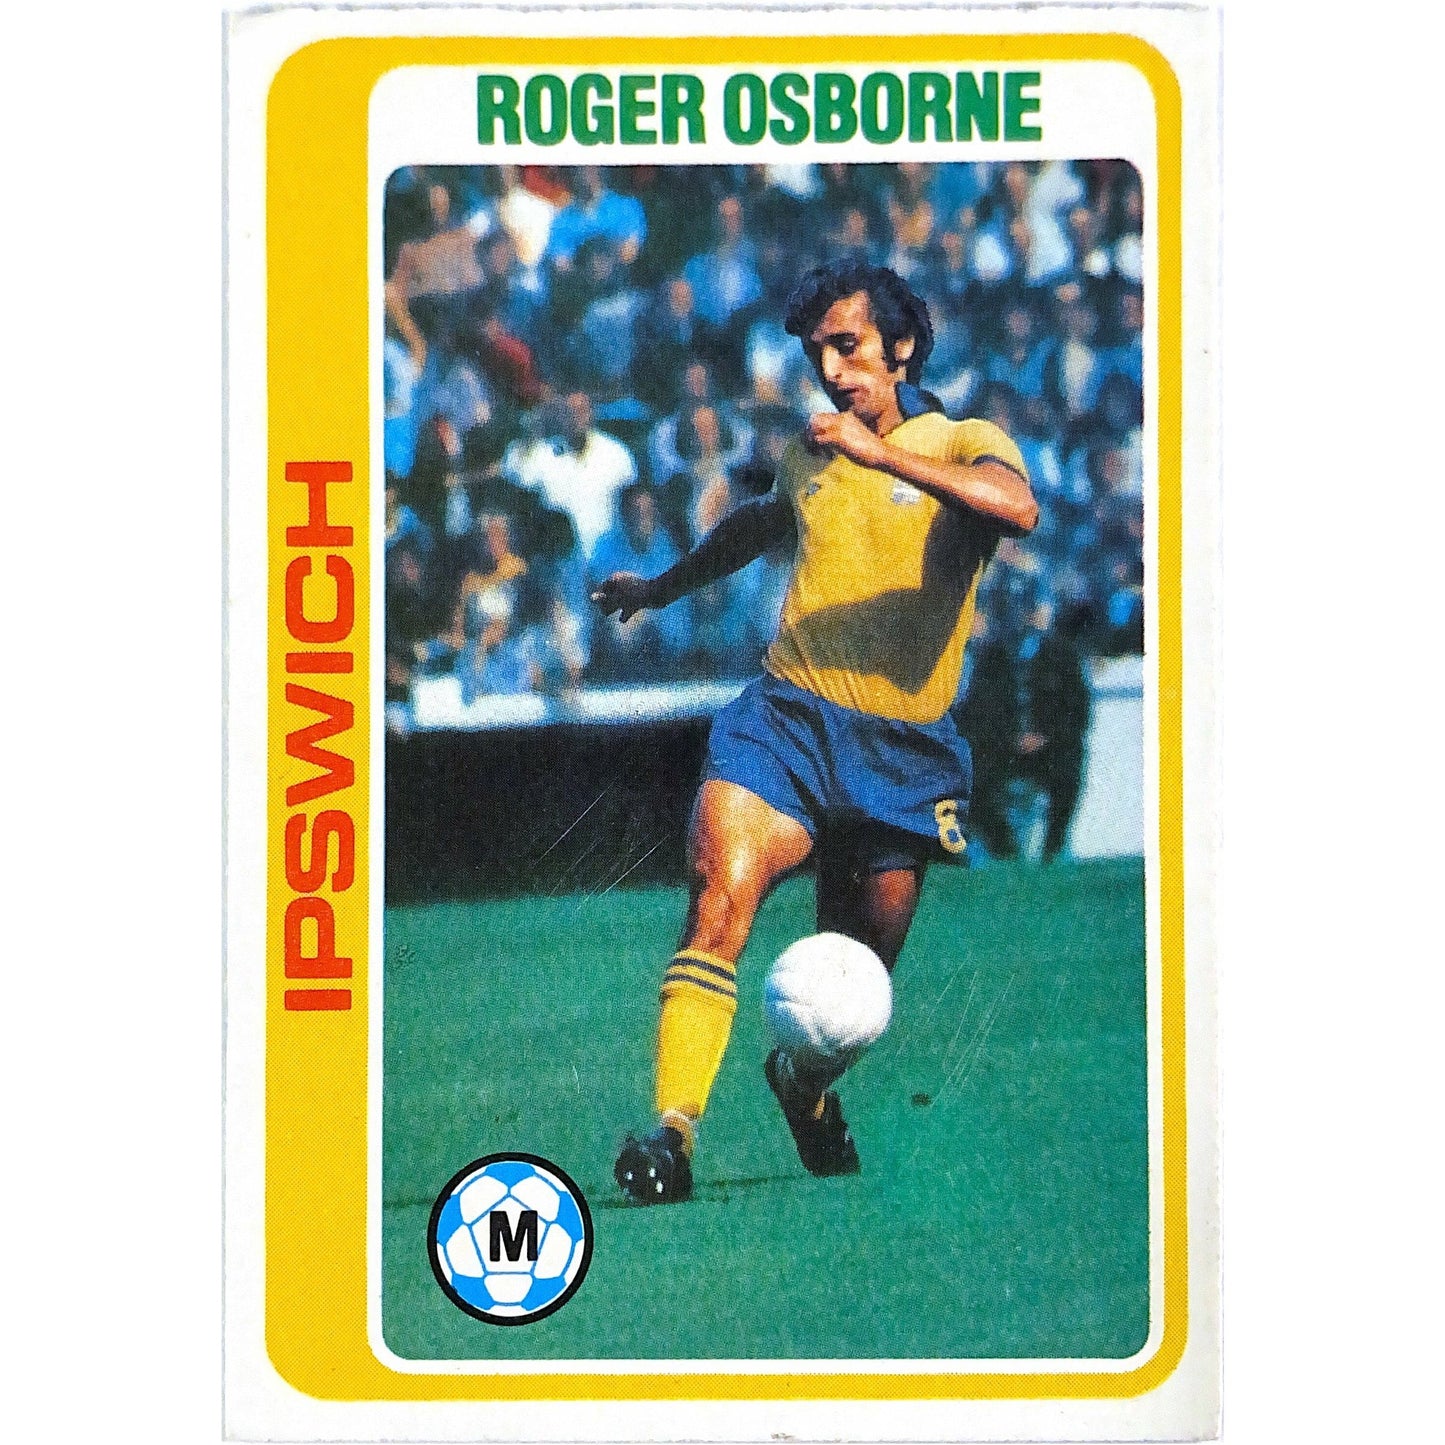 1979 Topps Roger Osborne